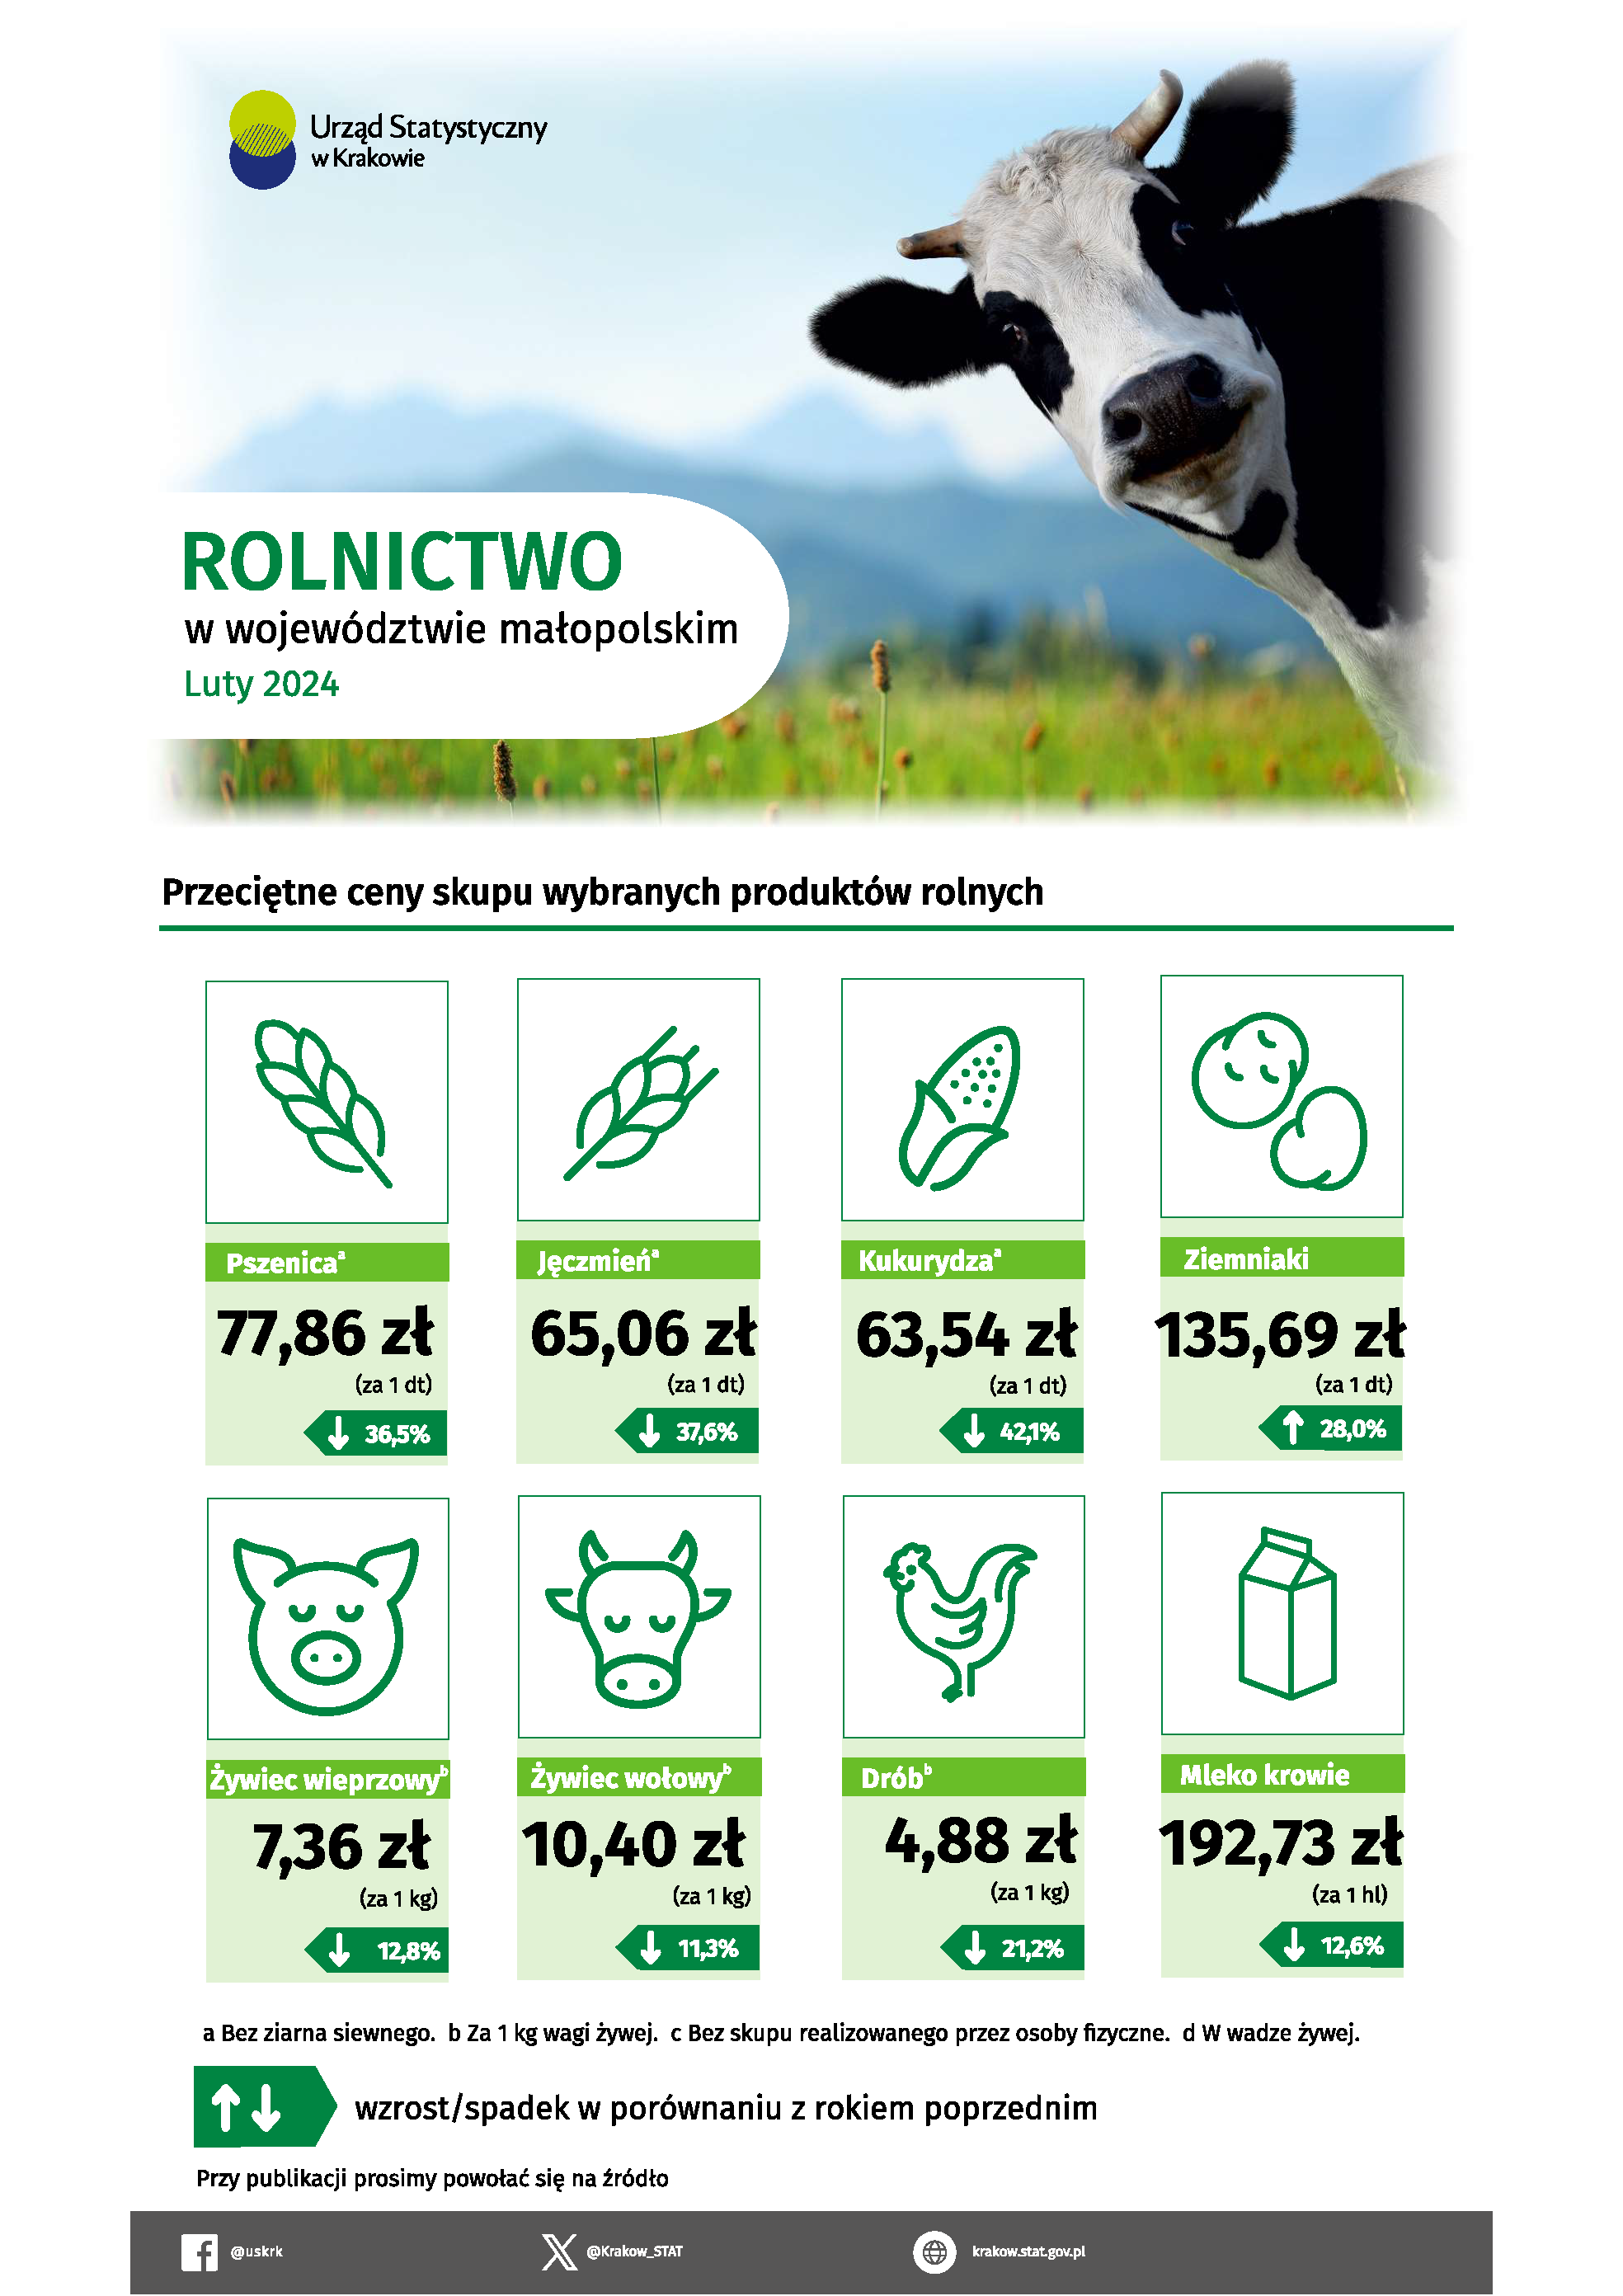 Rolnictwo w województwie małopolskim – infografika danymi z rolnictwa za luty 2024